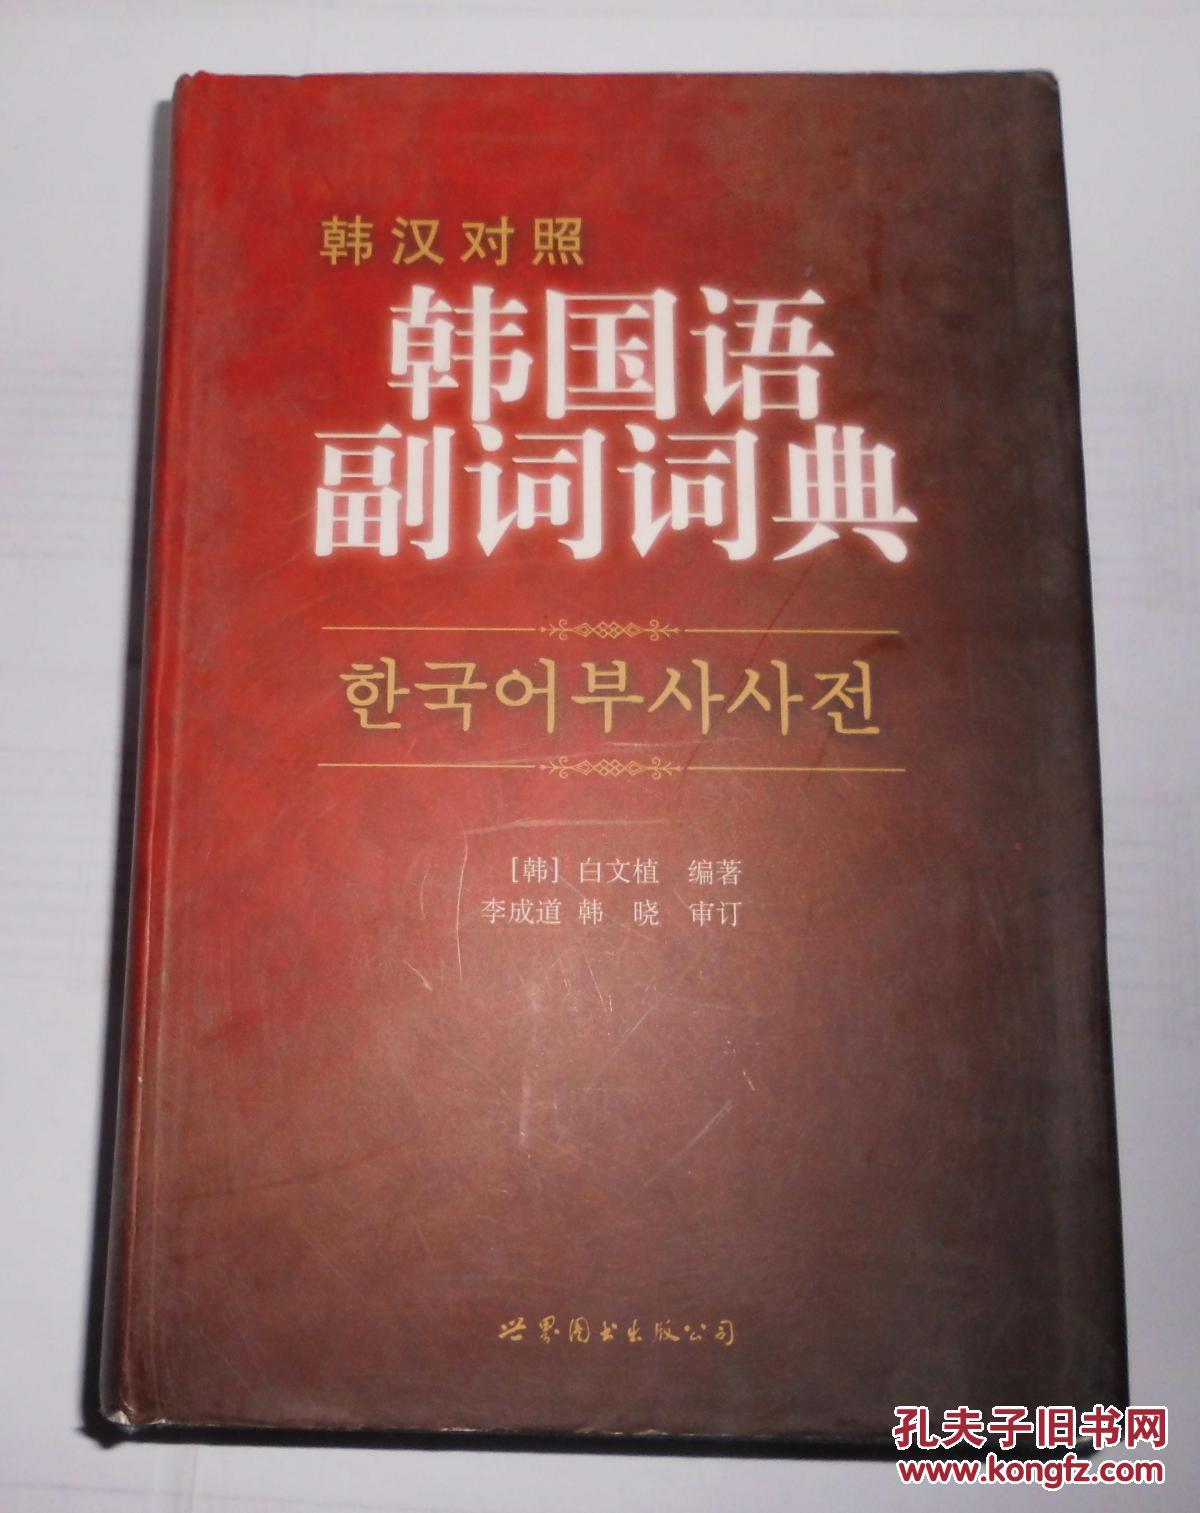 韩国语副词词典 (韩汉对照)  (韩国语) 精装 世界图书出版公司